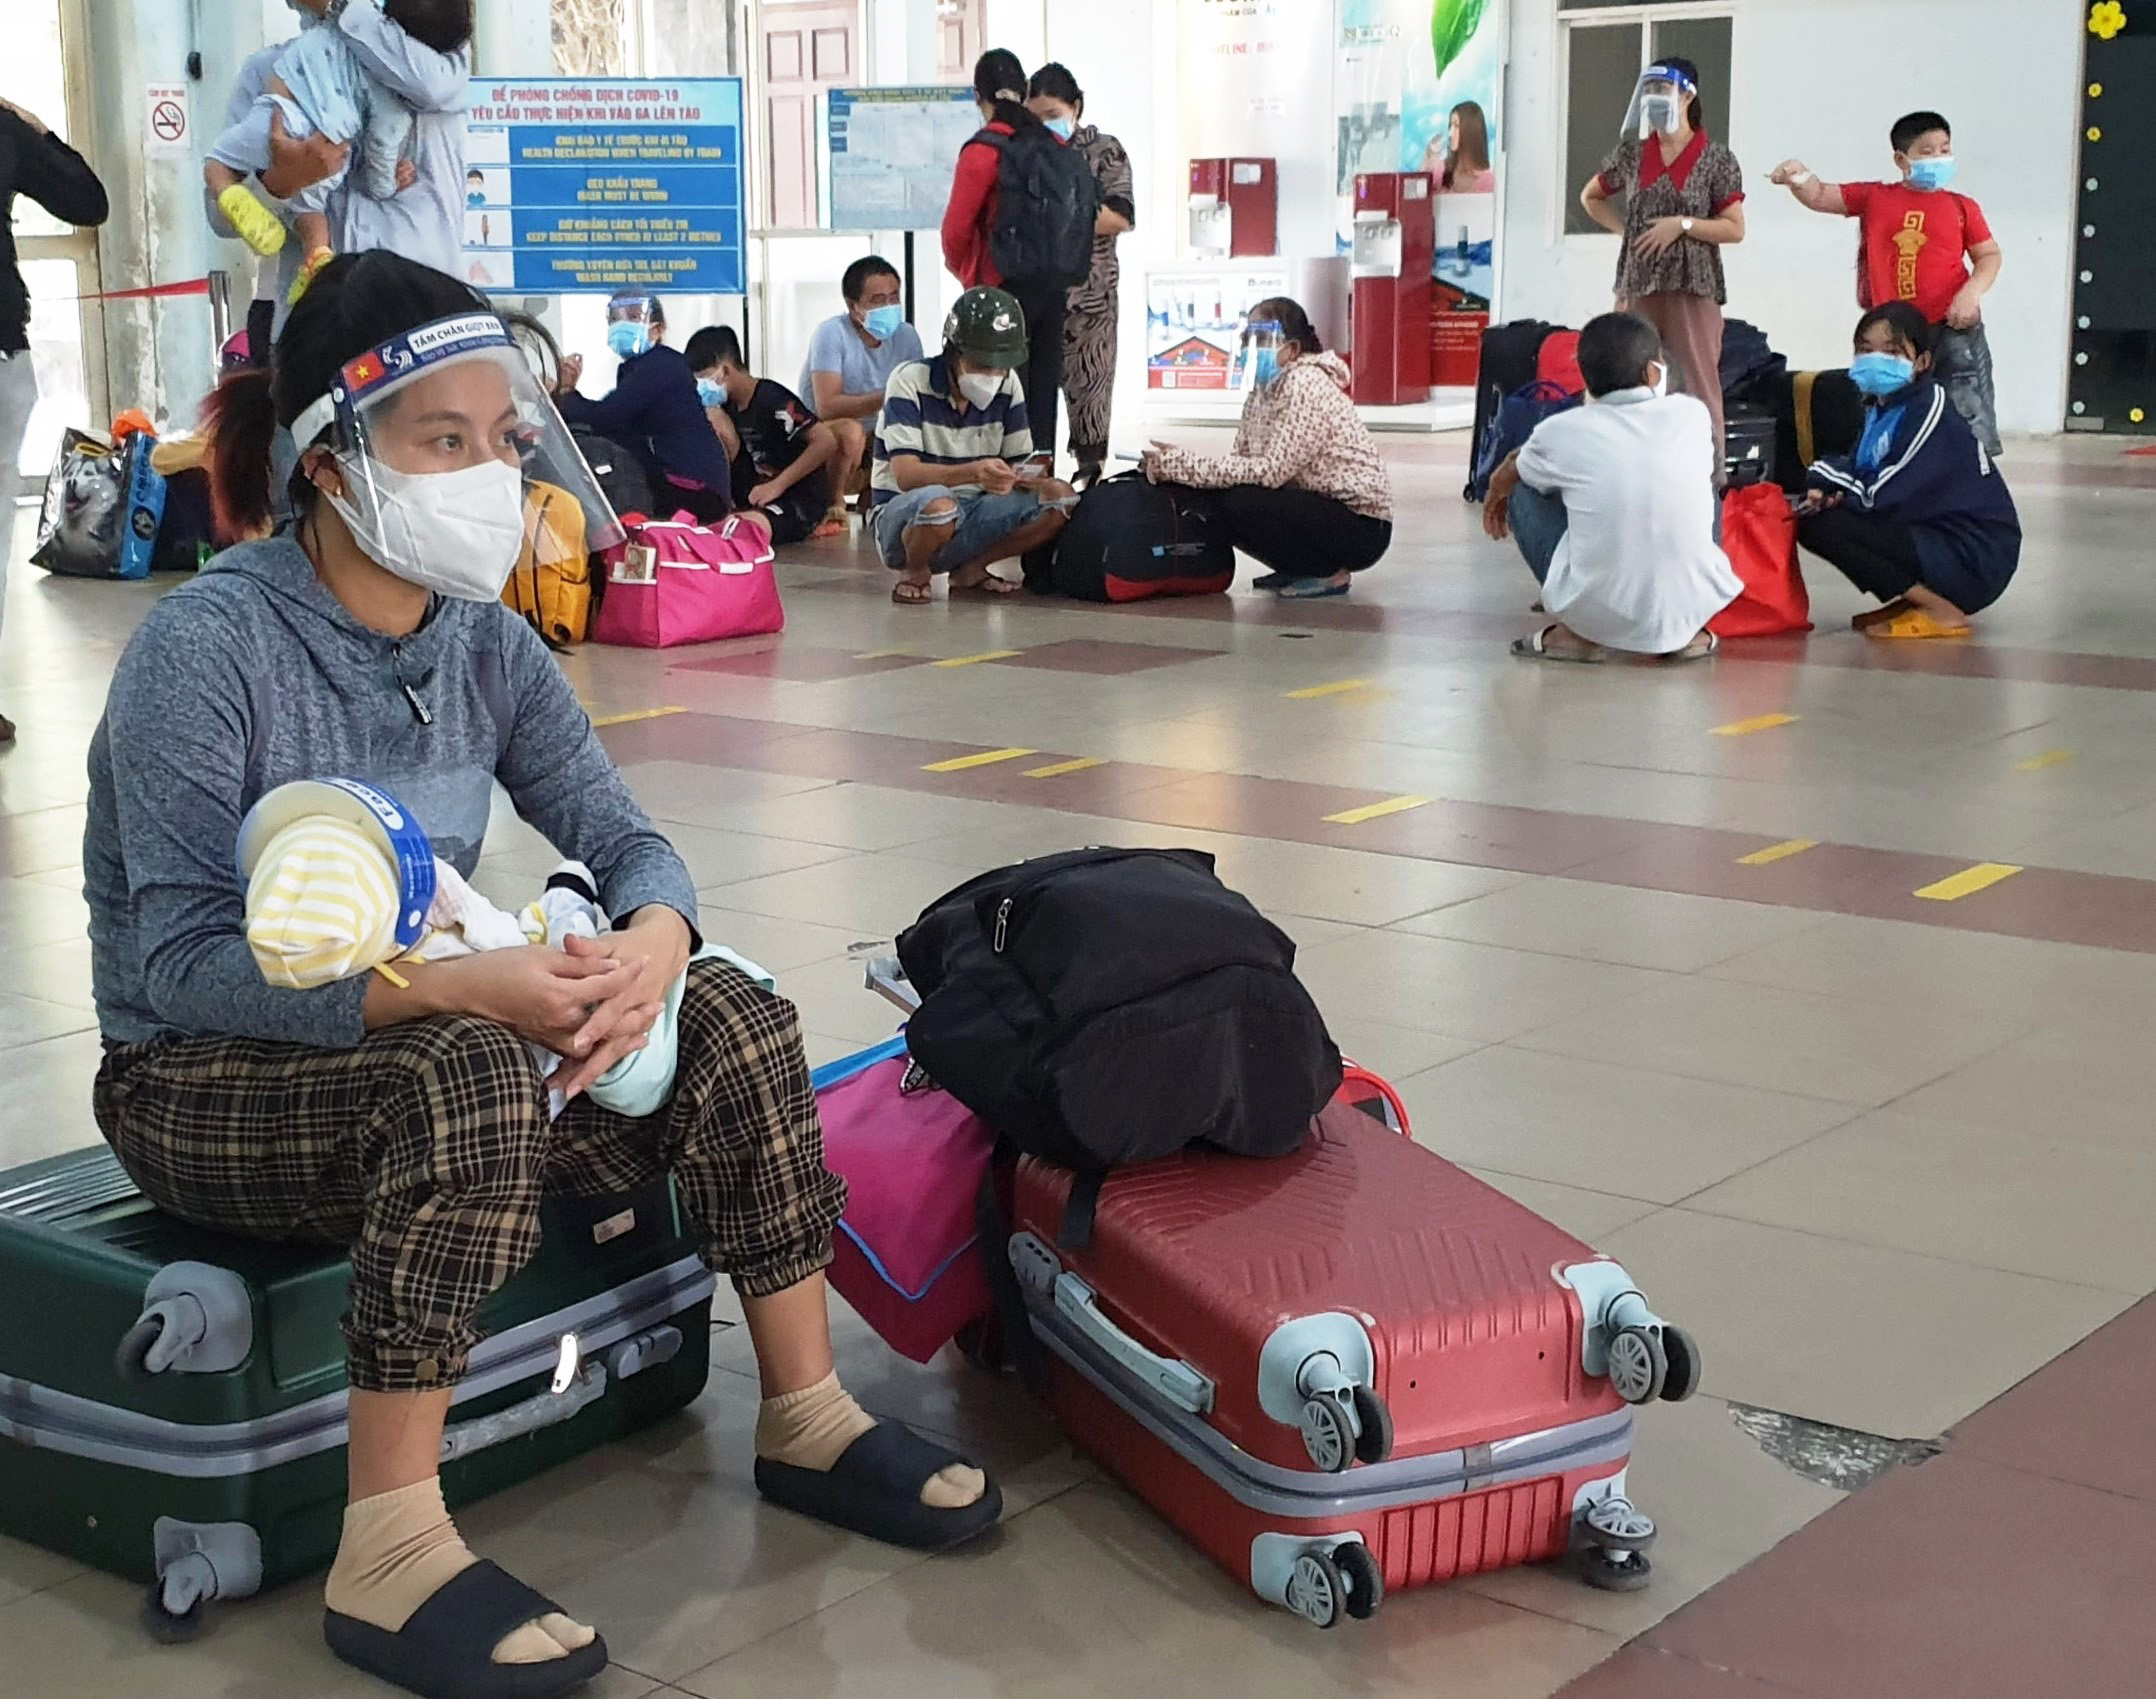 Ngày 10/3, chuyến SE12 xuất phát từ ga Sài Gòn (quận 3, TP.HCM) đón &nbsp;hơn 500 người dân tỉnh Ninh Bình, thuộc đối tượng ưu tiên: người già, phụ nữ mang thai, trẻ em dưới 6 tháng tuổi có người thân đi kèm, từ TP.HCM và các tỉnh phía Nam trở về quê.